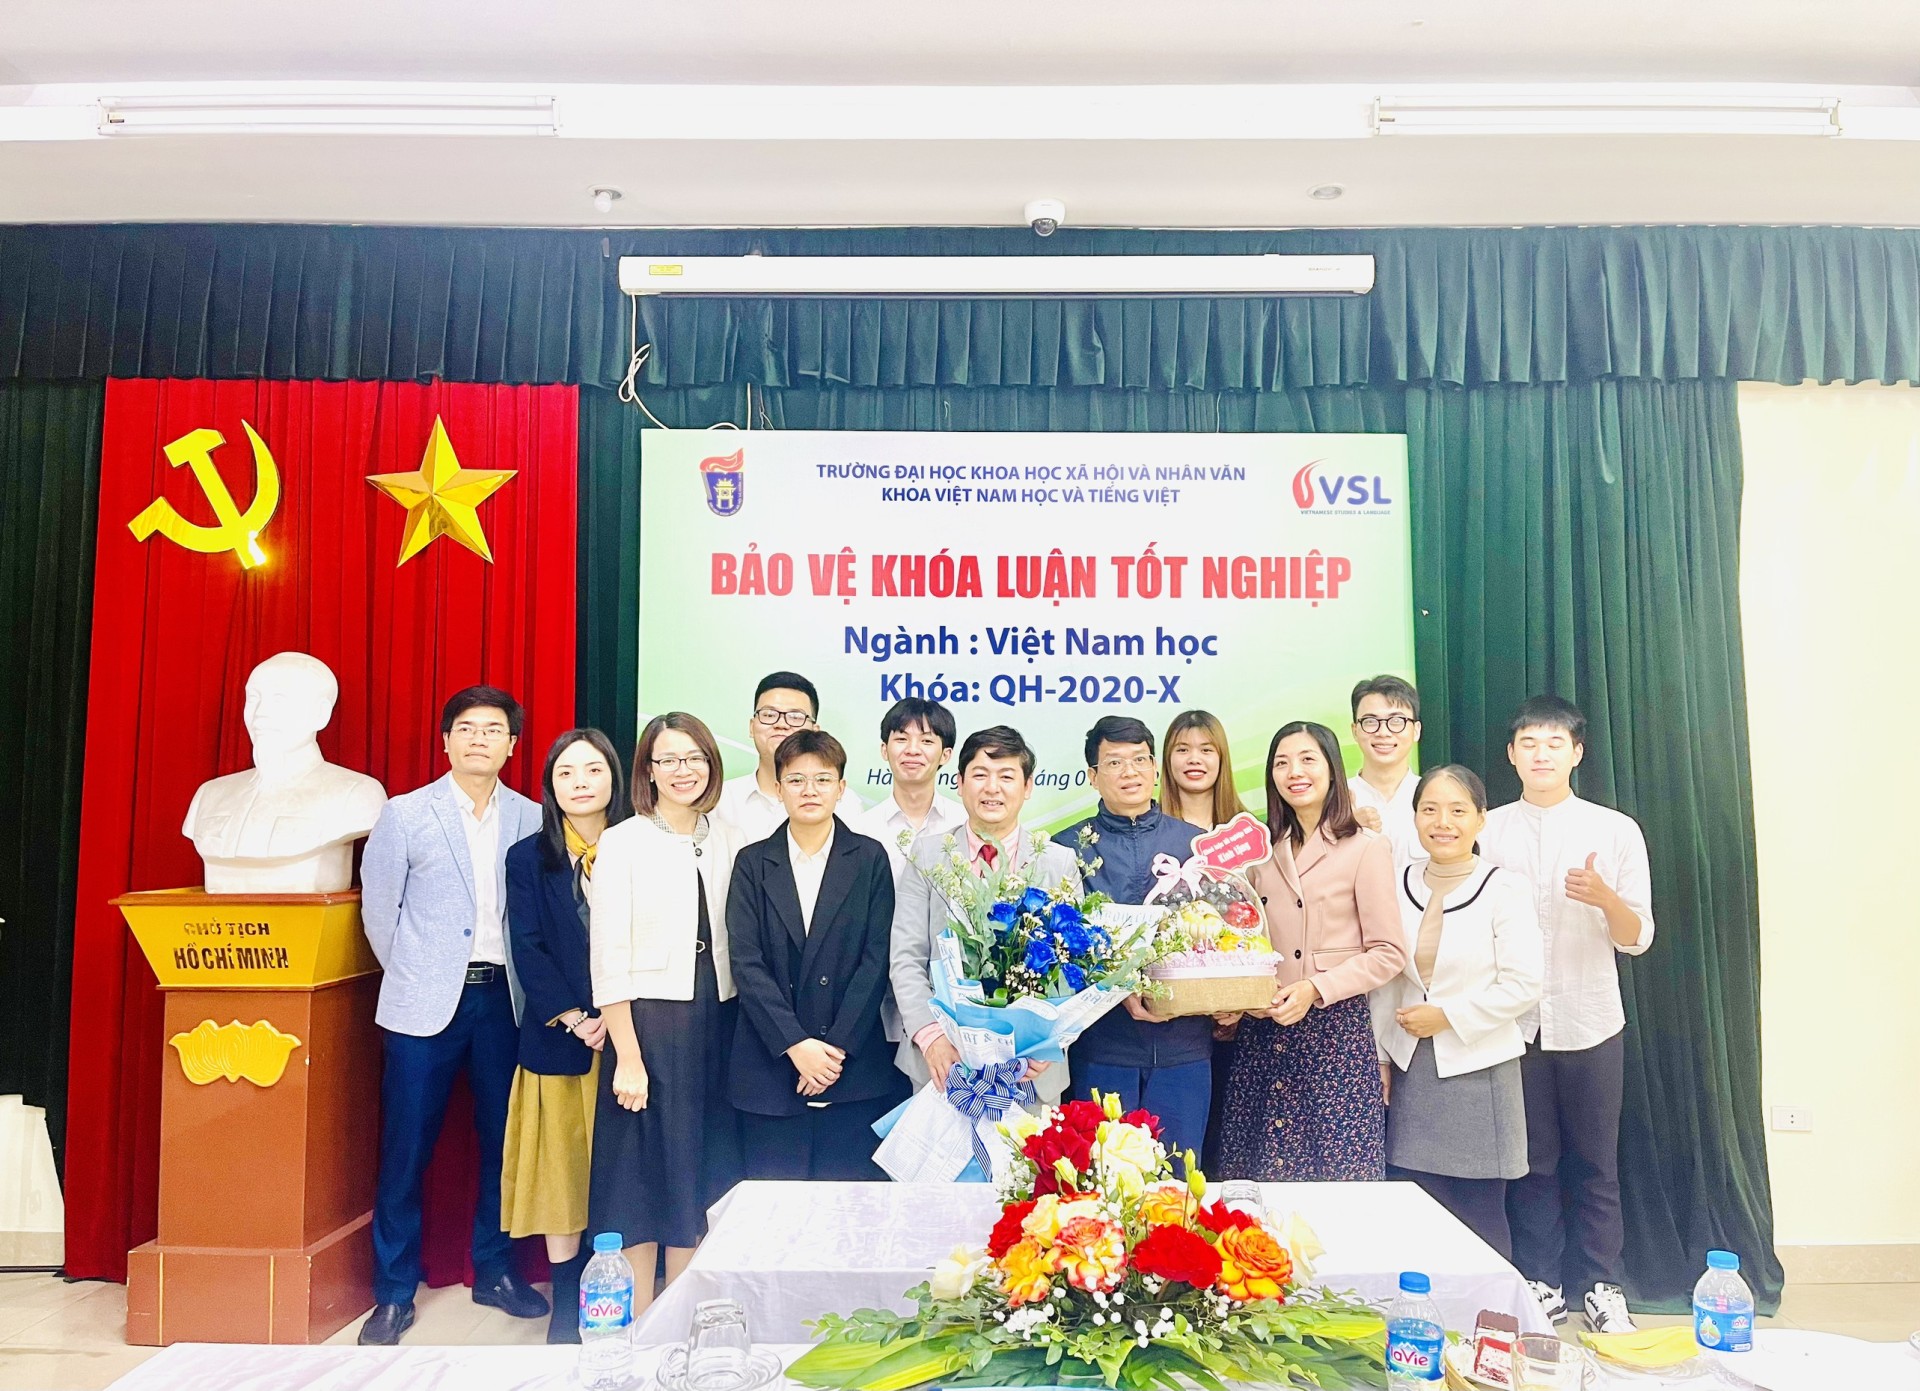 Sinh viên Khoá QH-2020-X Khoa Việt Nam học và Tiếng Việt bảo vệ khóa luận tốt nghiệp